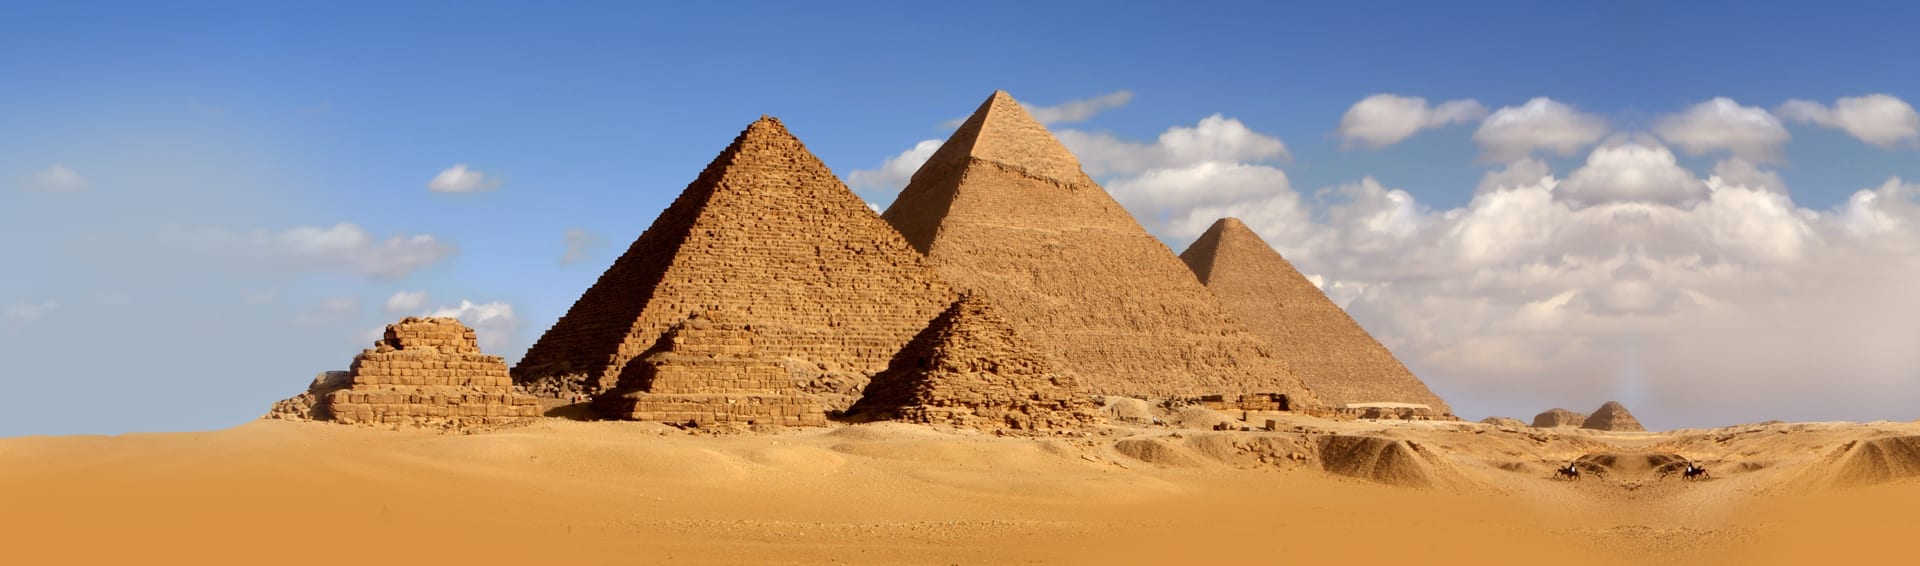 60% Off Egypt Tours